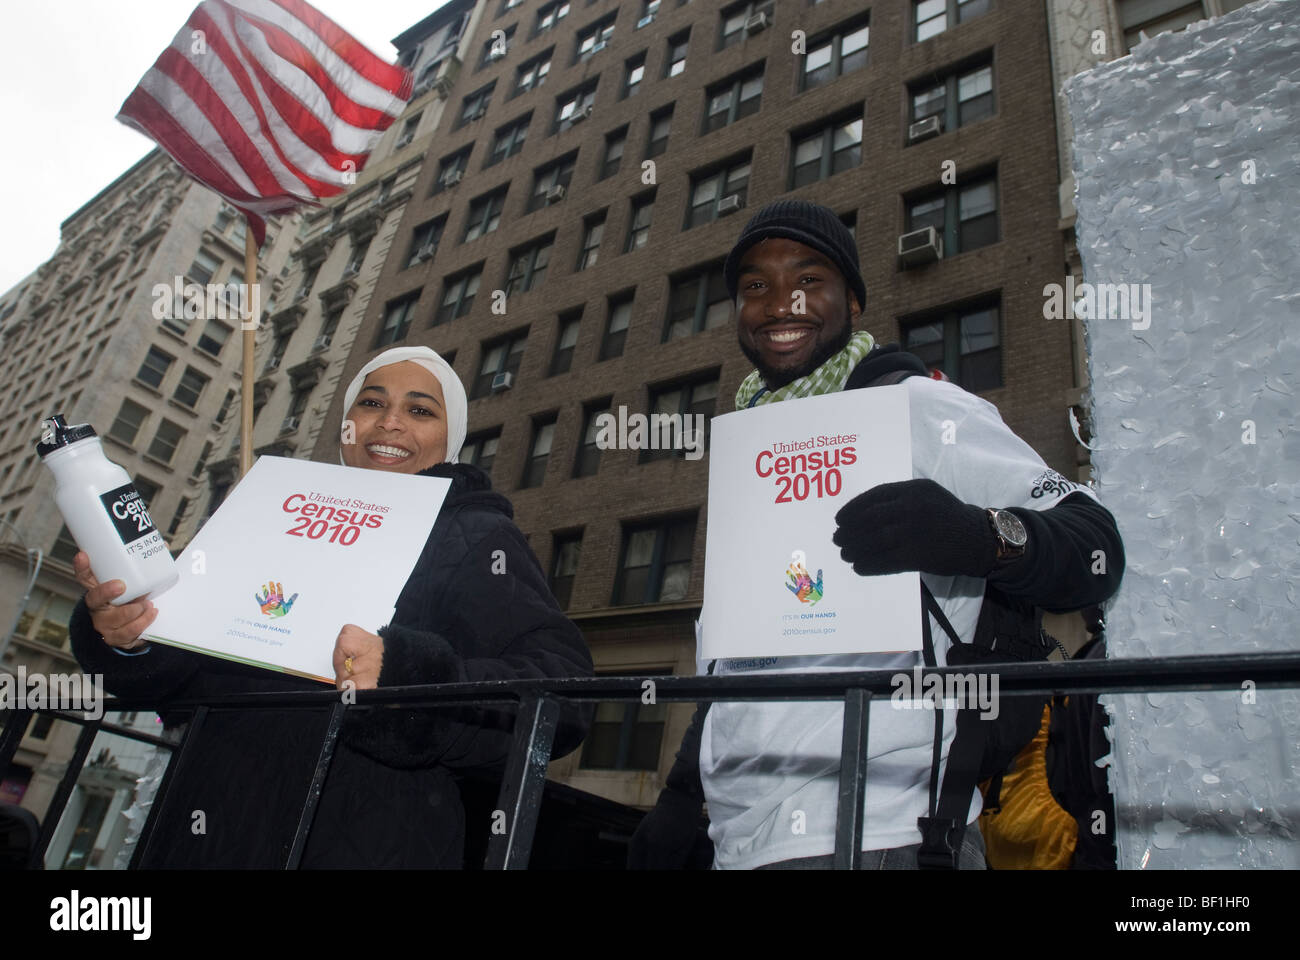 Promouvoir les travailleurs du recensement Le recensement de 2010 dans le cadre de leur campagne de sensibilisation dans le monde musulman Day Parade à New York Banque D'Images